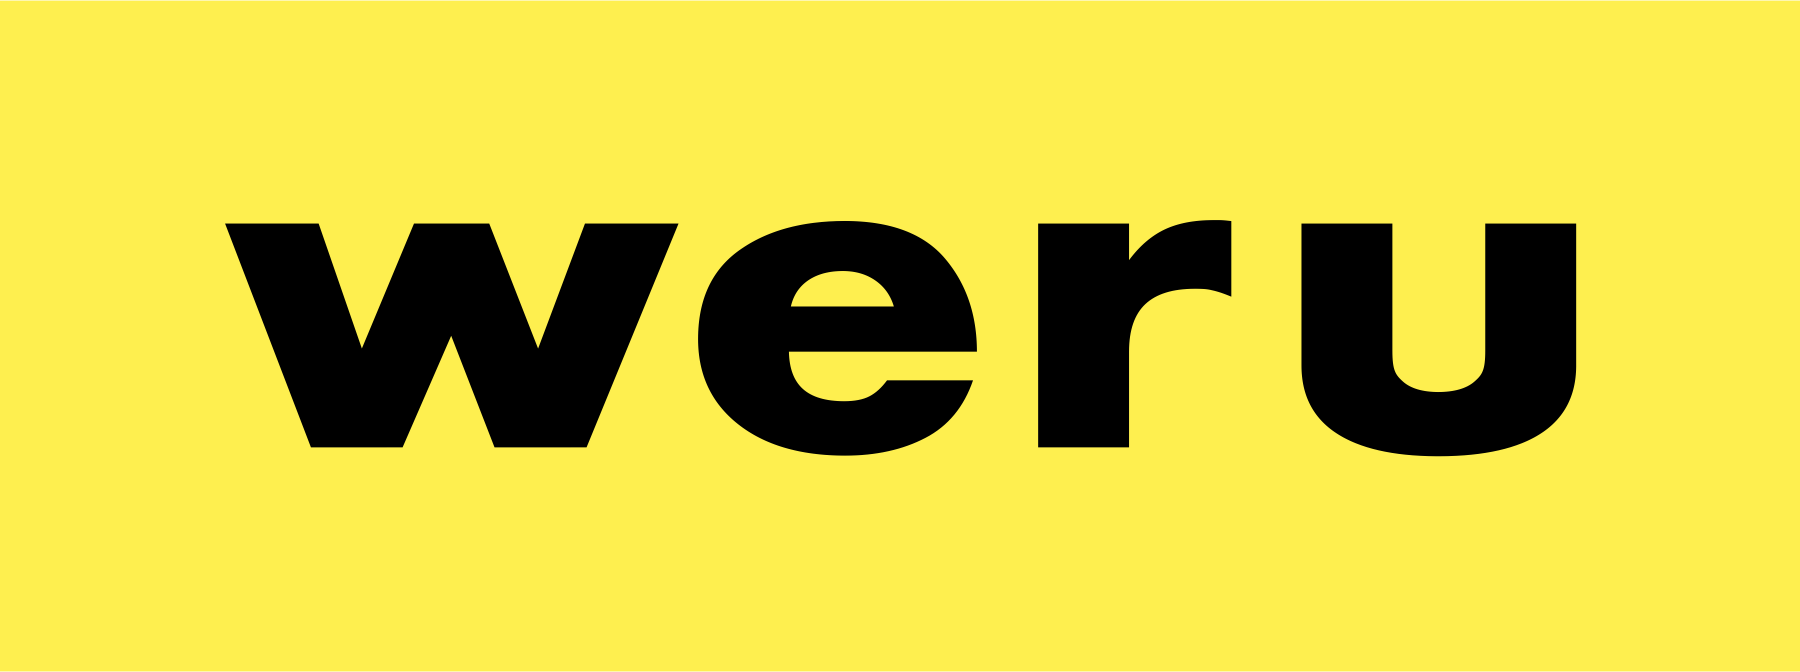 Das Weru Logo in schwarzer Schrift und gelbem Hintergrund.